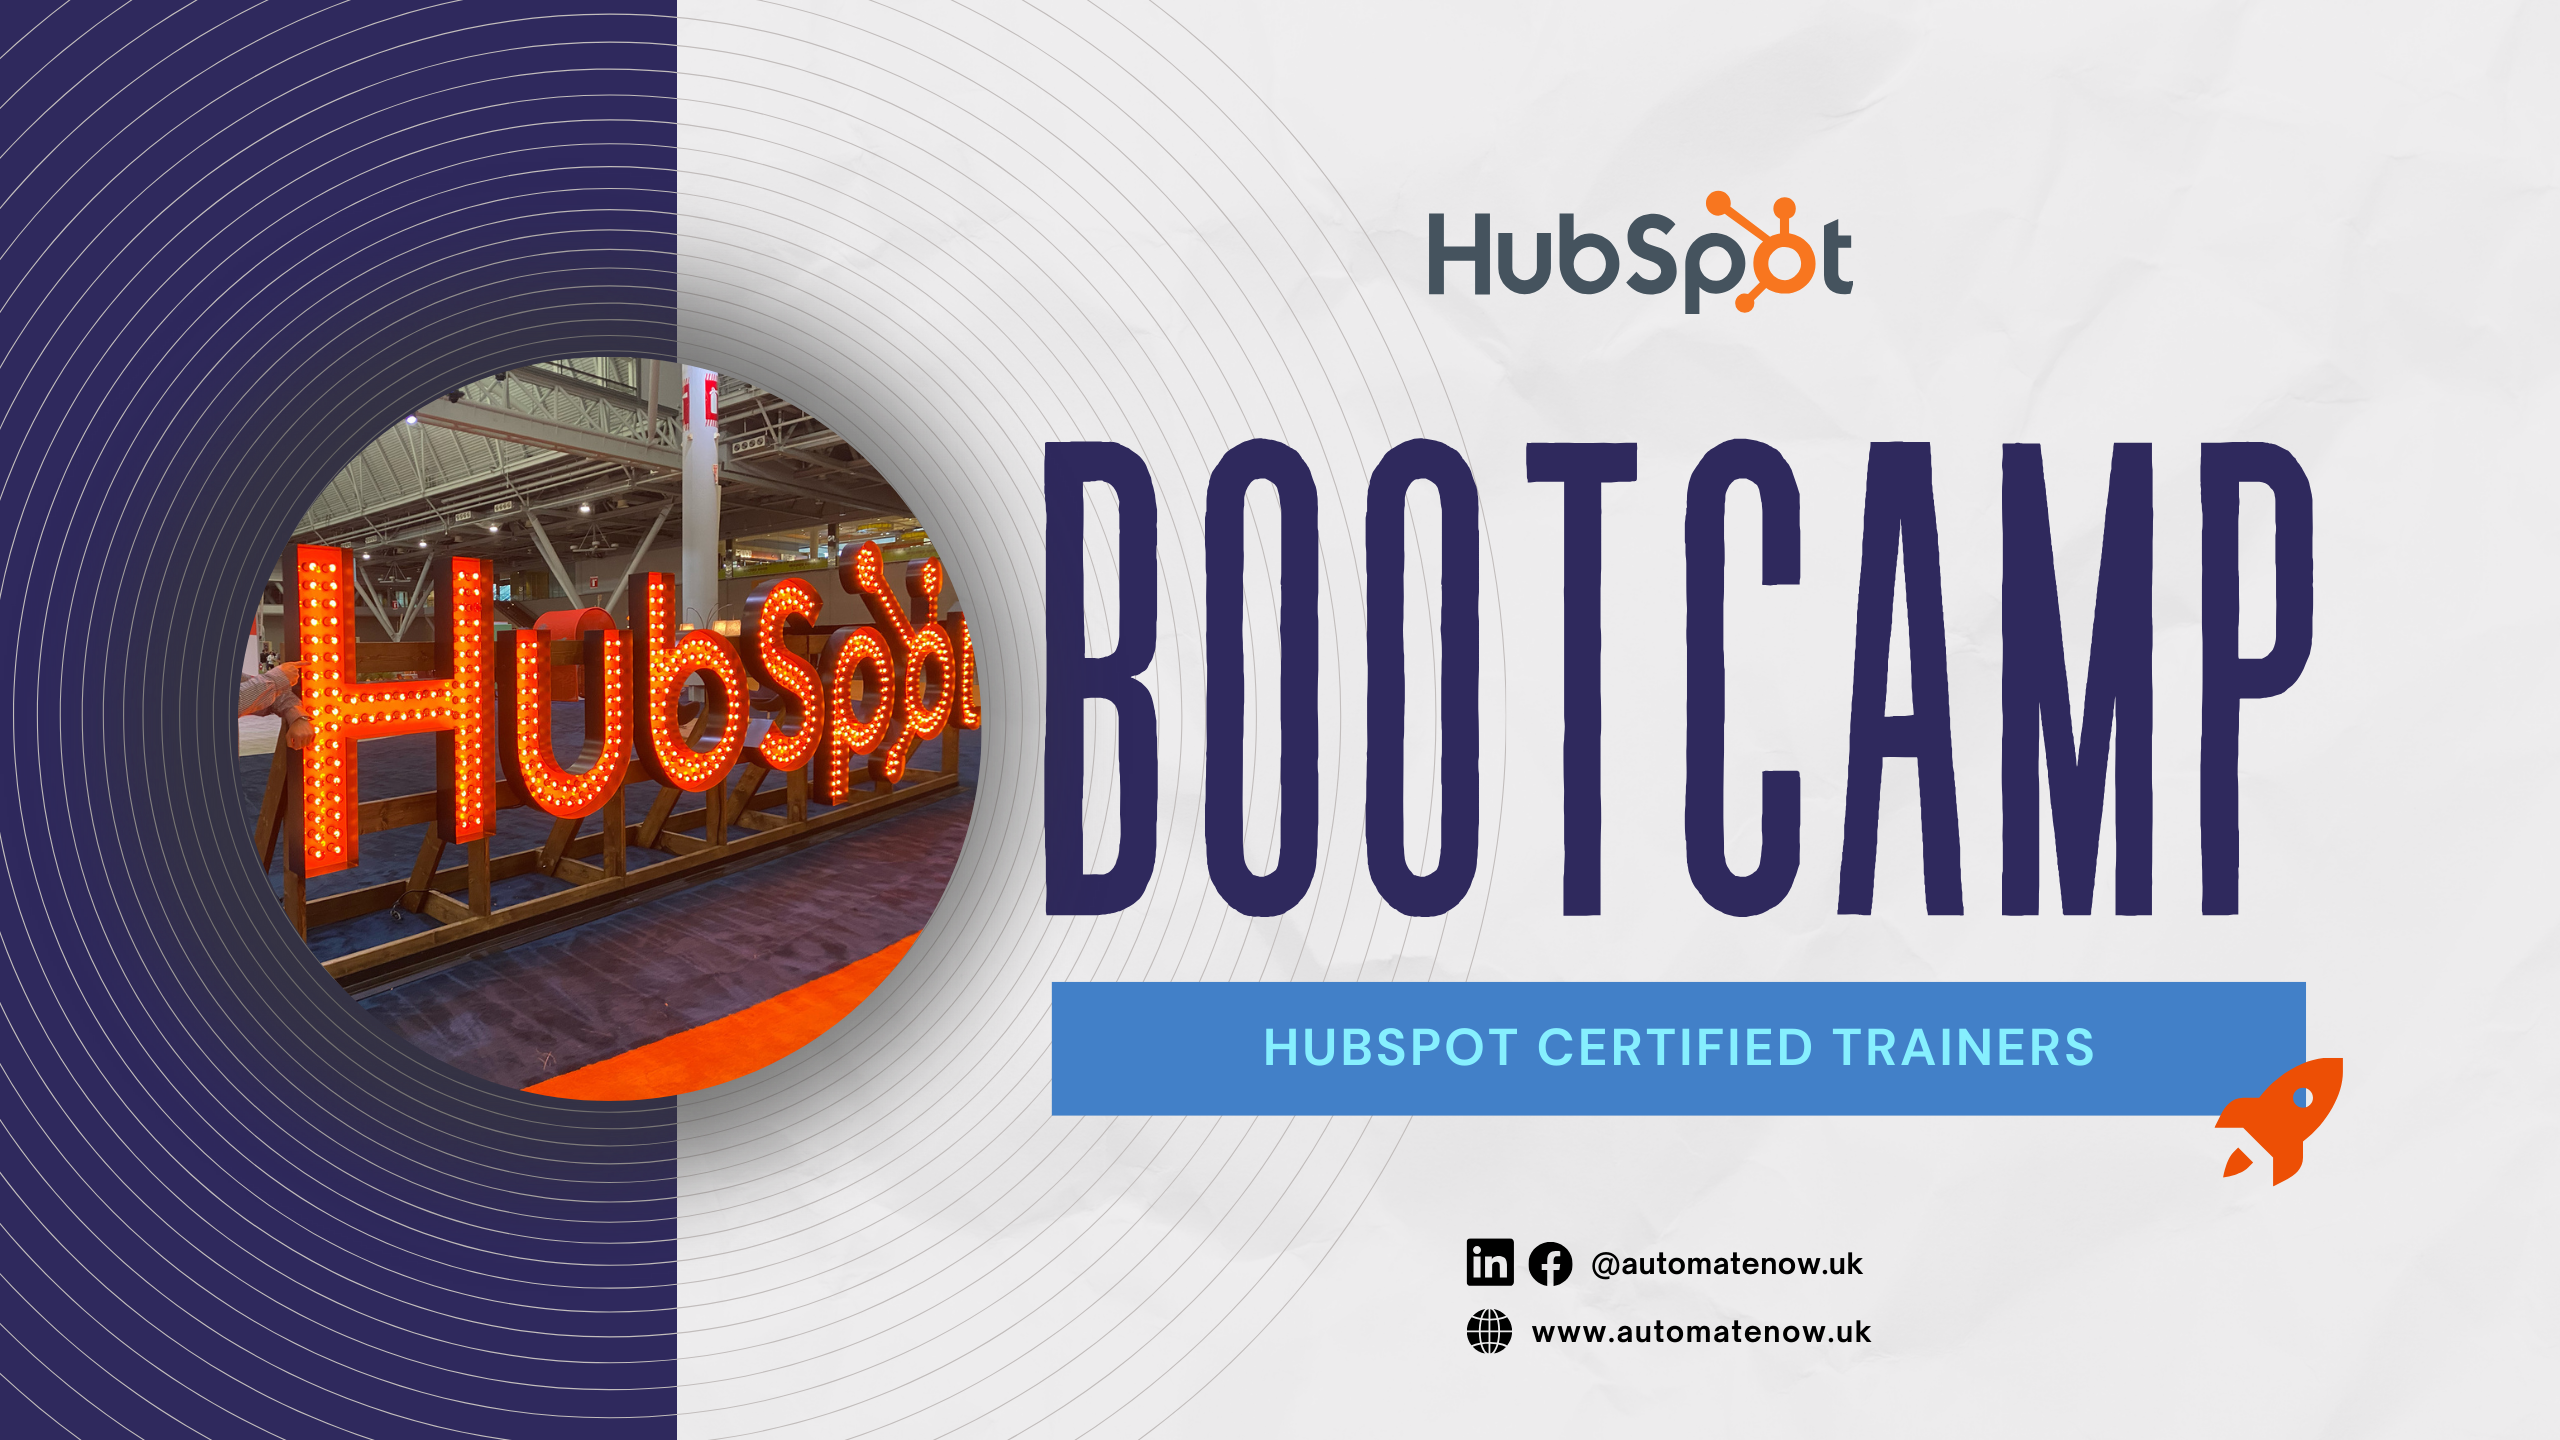 HubSpot Bootcamp